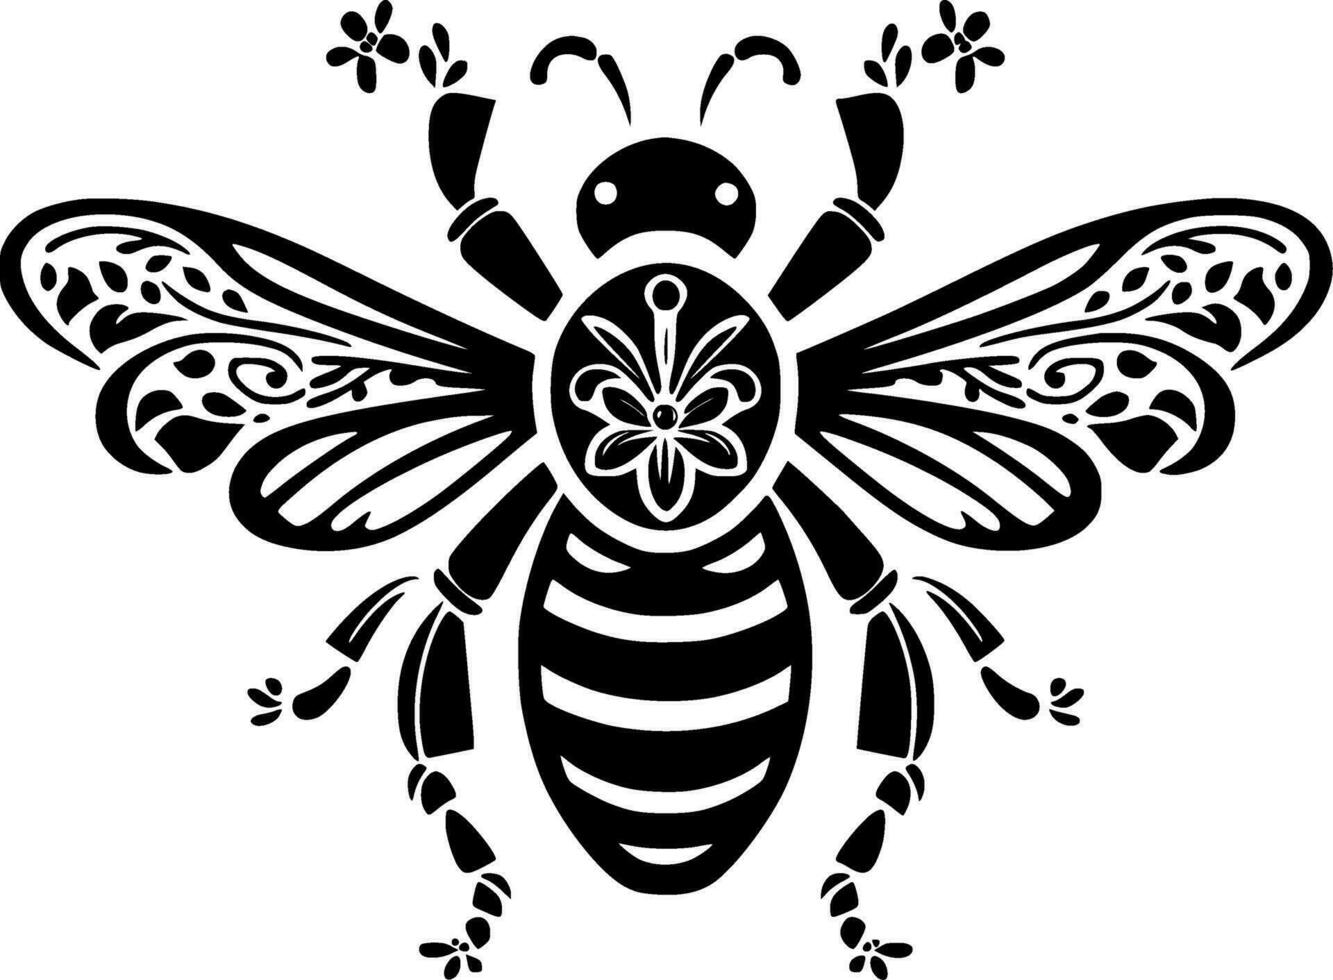 abeille - noir et blanc isolé icône - vecteur illustration